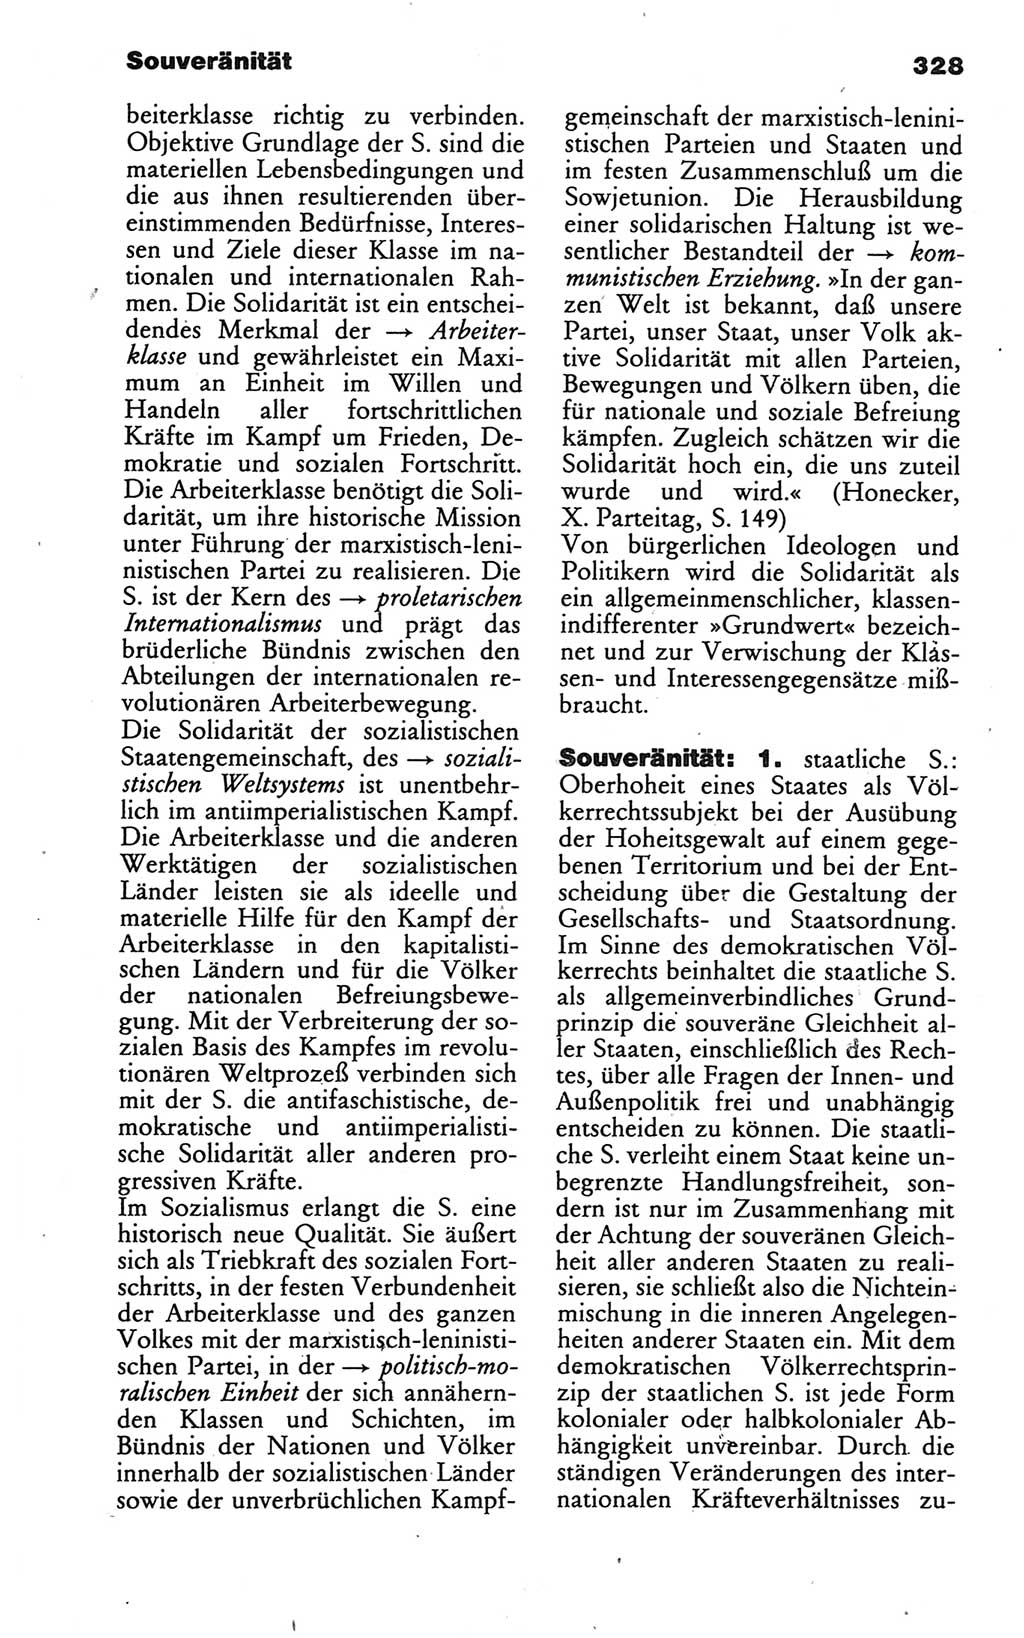 Wörterbuch des wissenschaftlichen Kommunismus [Deutsche Demokratische Republik (DDR)] 1986, Seite 328 (Wb. wiss. Komm. DDR 1986, S. 328)